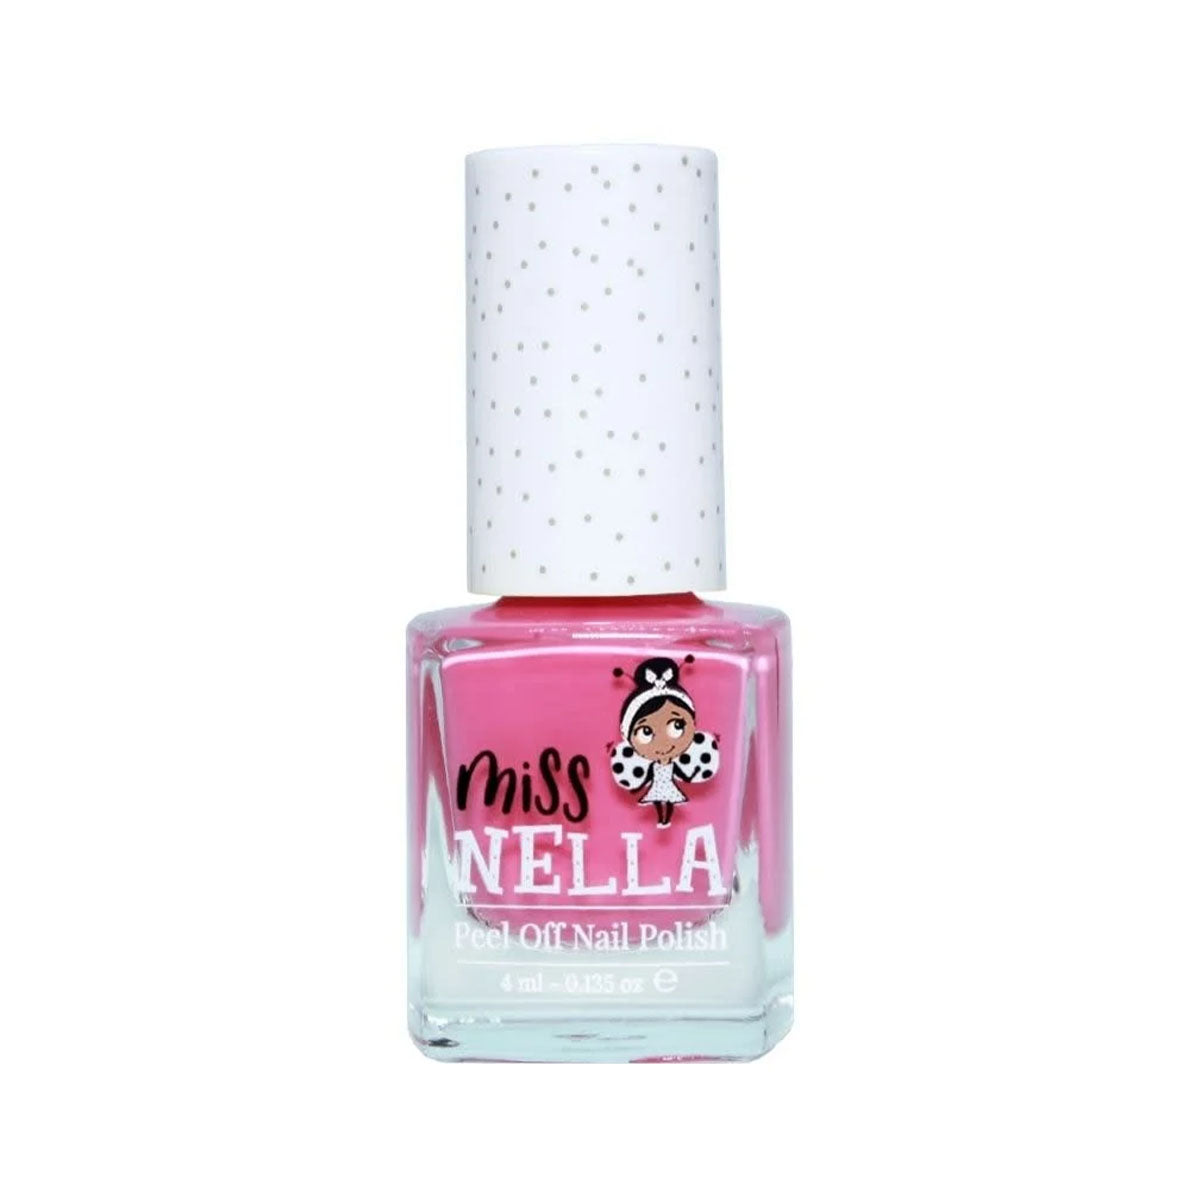 Laat de nageltjes van jouw kindje shinen met de nagellak pink a boo van het merk Miss Nella. De peel off nagellak is speciaal ontworpen voor kinderen en is vrij van chemicaliën. In verschillende kleuren. VanZus